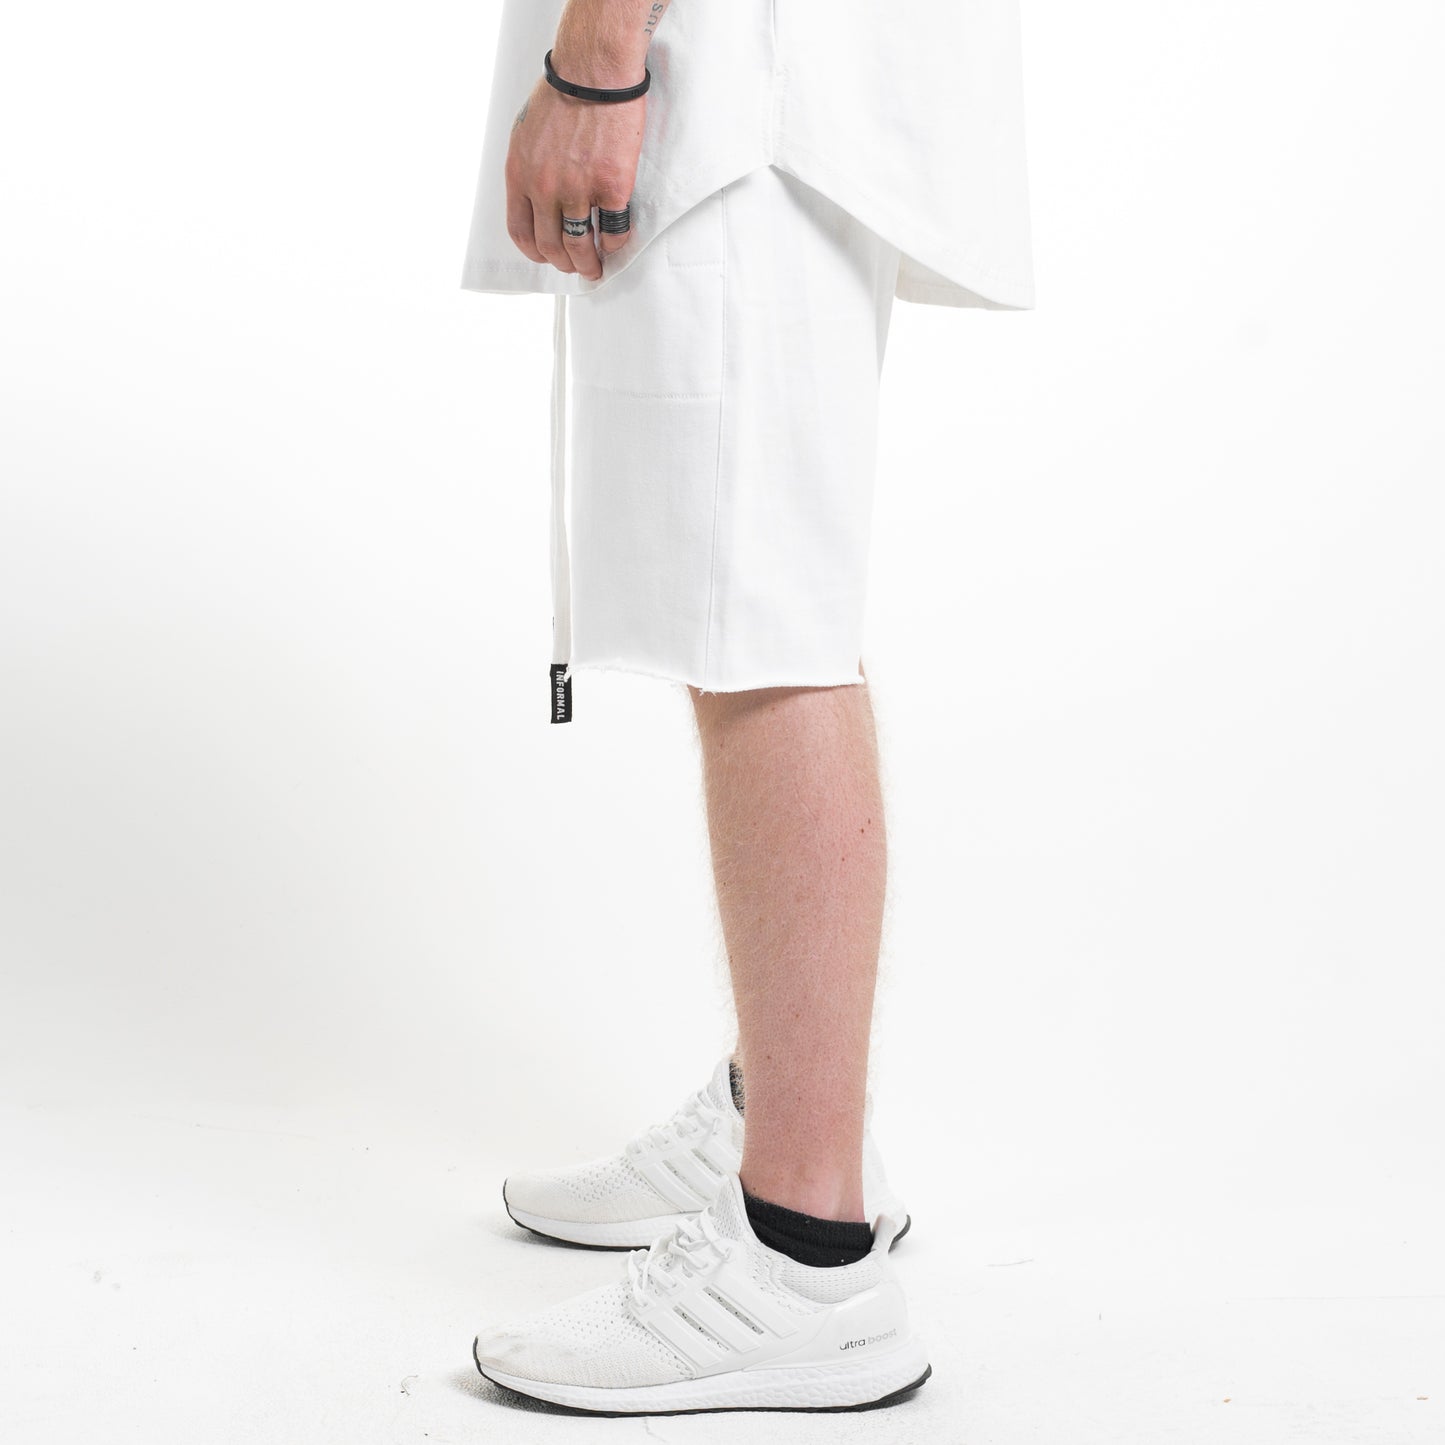 Shorts con entrepierna abierta: Blanco